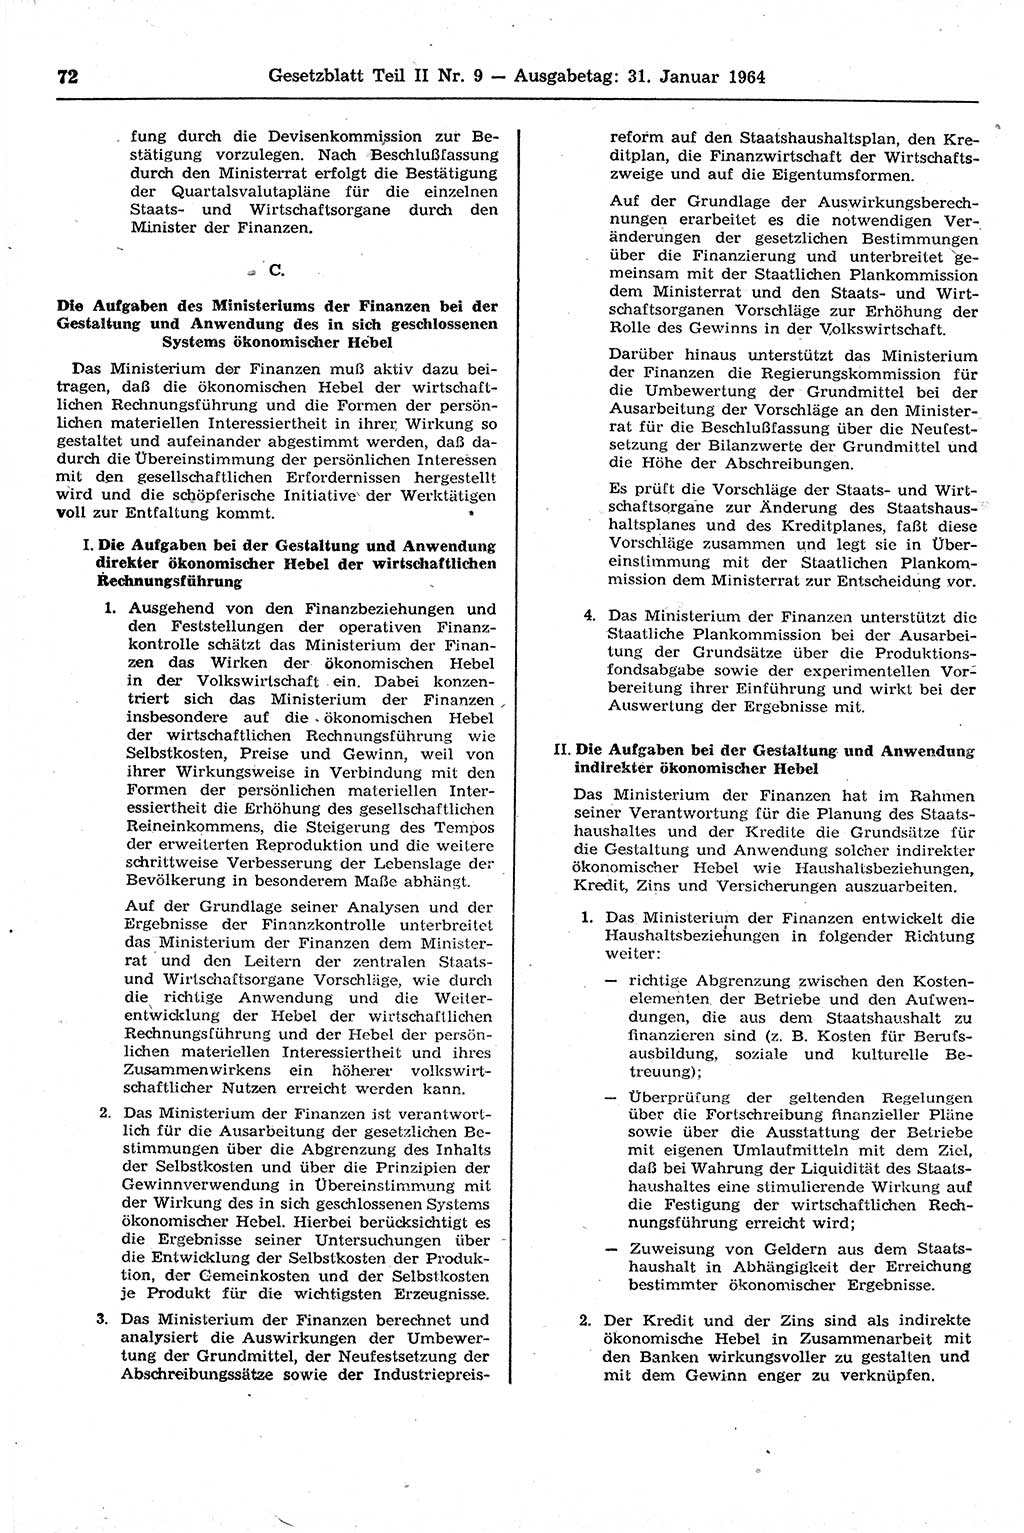 Gesetzblatt (GBl.) der Deutschen Demokratischen Republik (DDR) Teil ⅠⅠ 1964, Seite 72 (GBl. DDR ⅠⅠ 1964, S. 72)